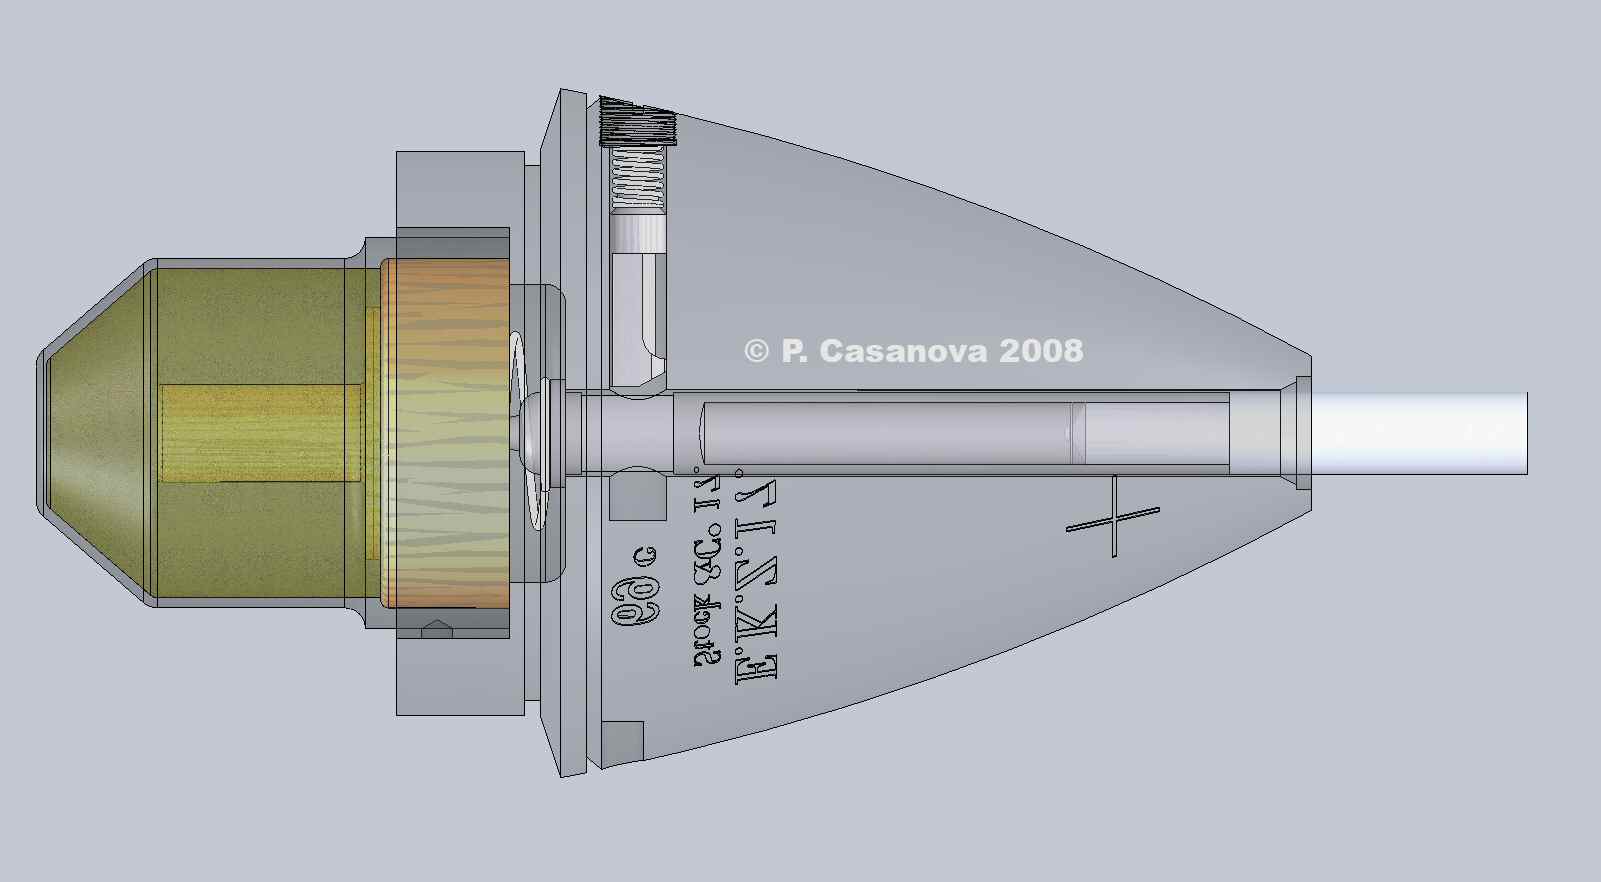 Fusee EKZ 17 en vol : verrou centrifuge repousse